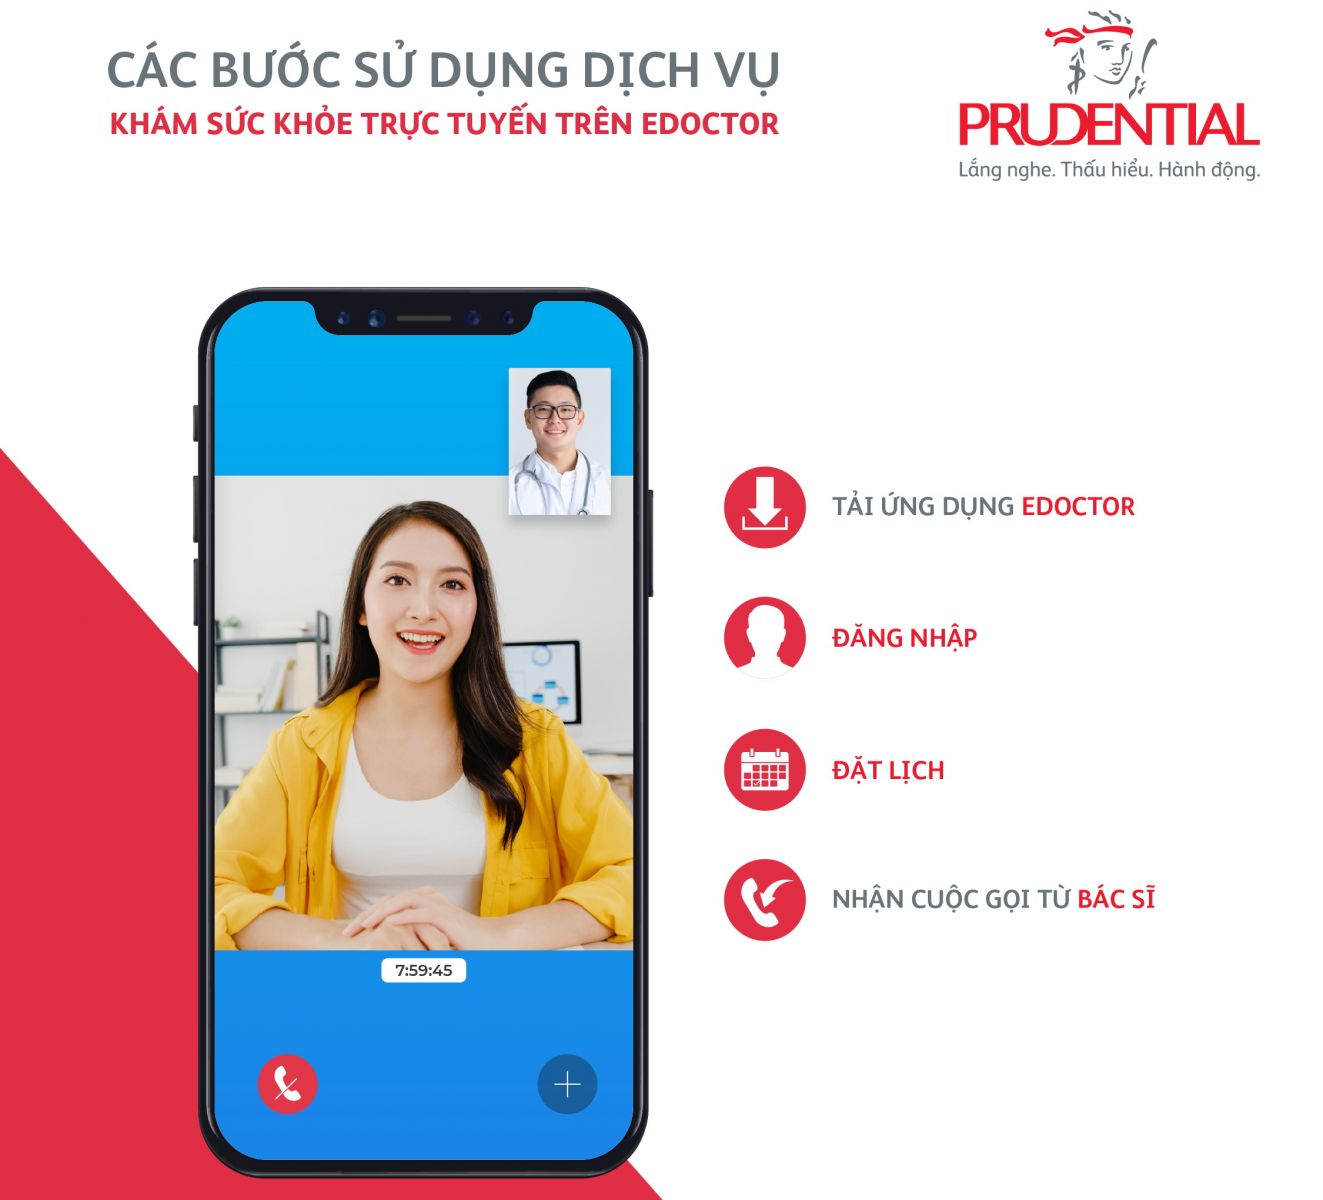 Prudential ra mắt sản phẩm giáo dục 'Pru-Hành trang trưởng thành' |  baotintuc.vn